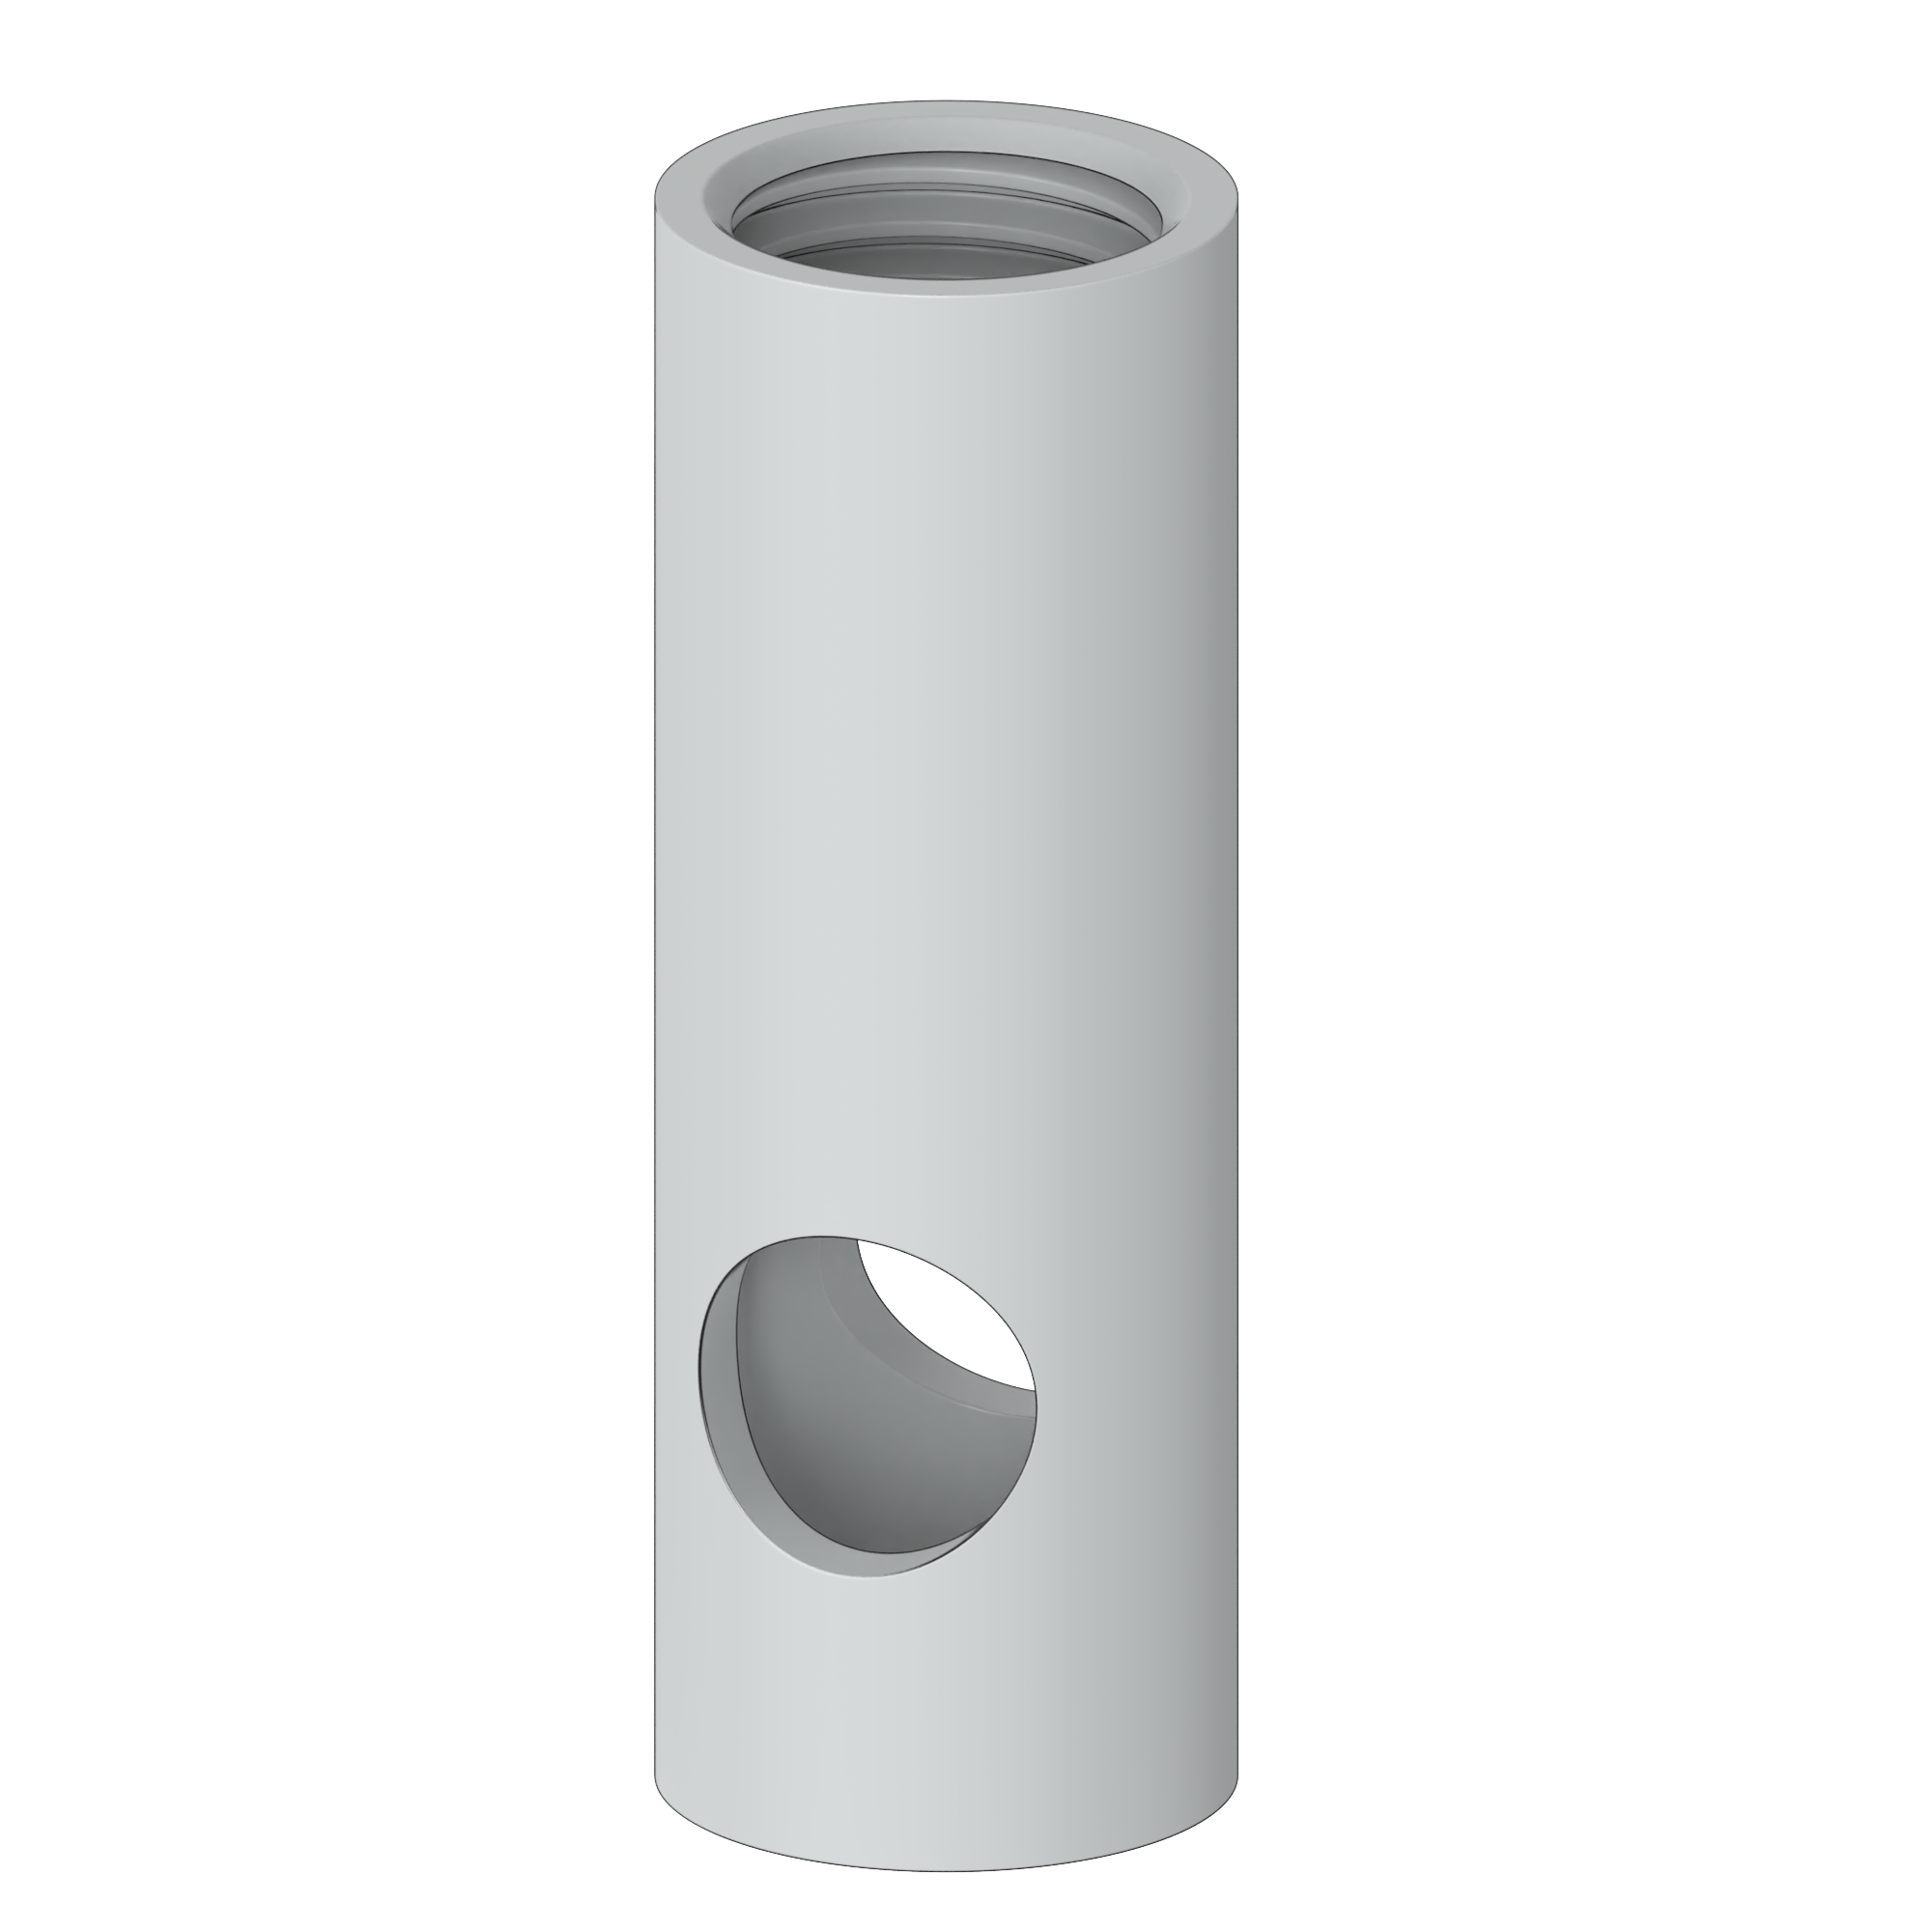 Tube cross hole socket BZP 3D model